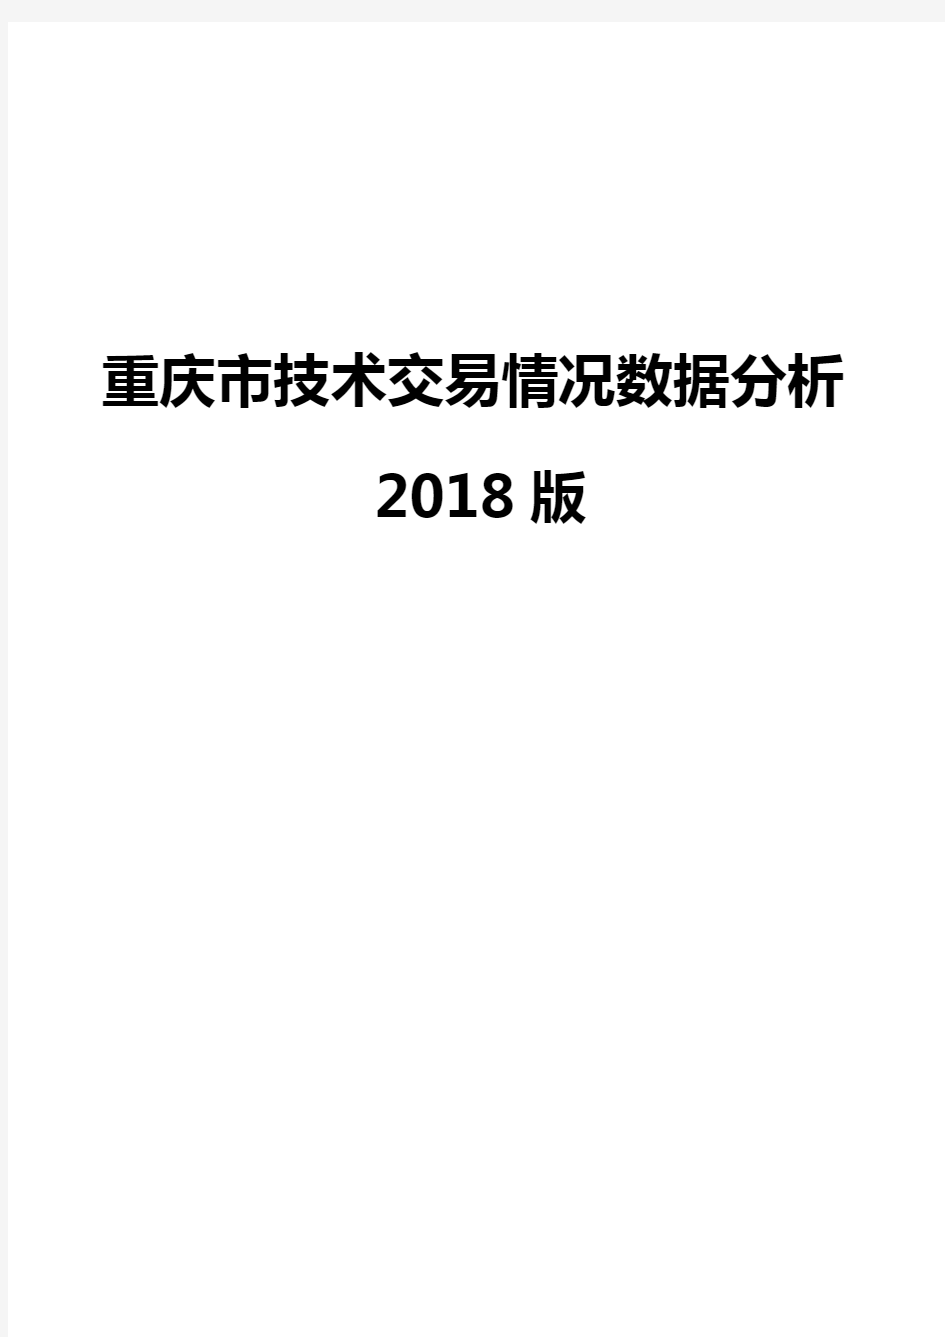 重庆市技术交易情况数据分析2018版